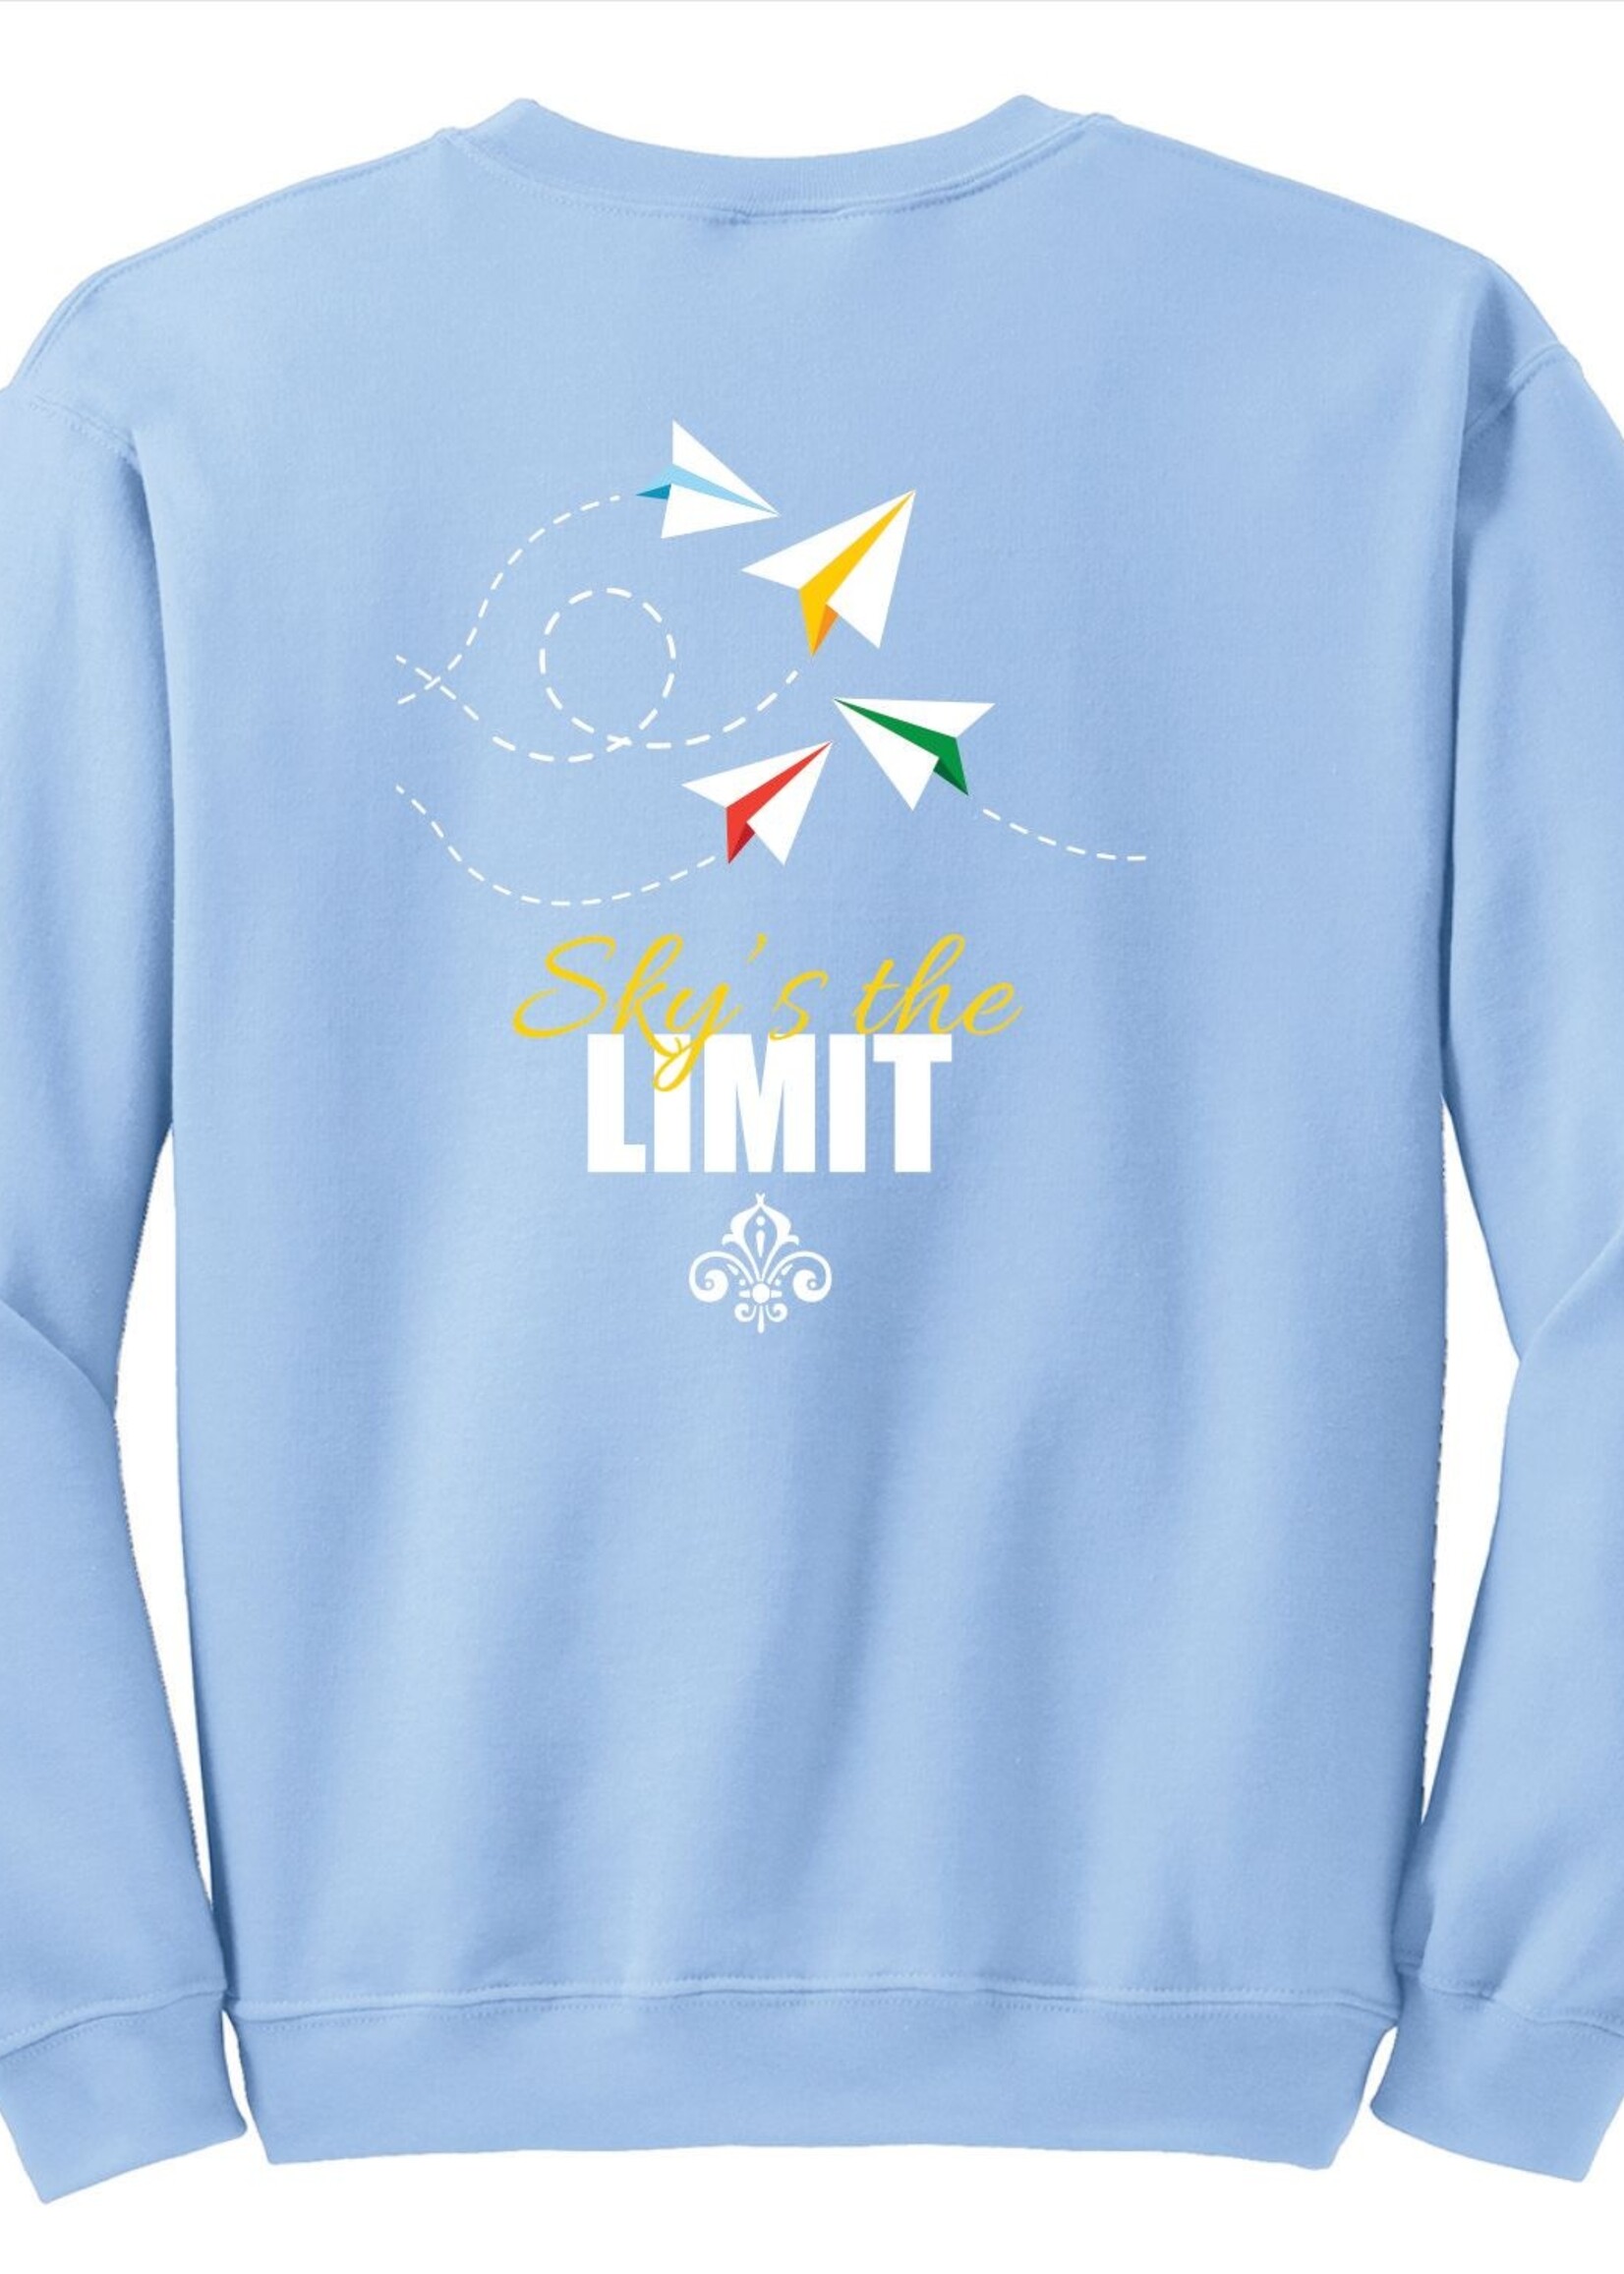 18000 OLP Women's Crew Sweatshirt Sky's the limit Store